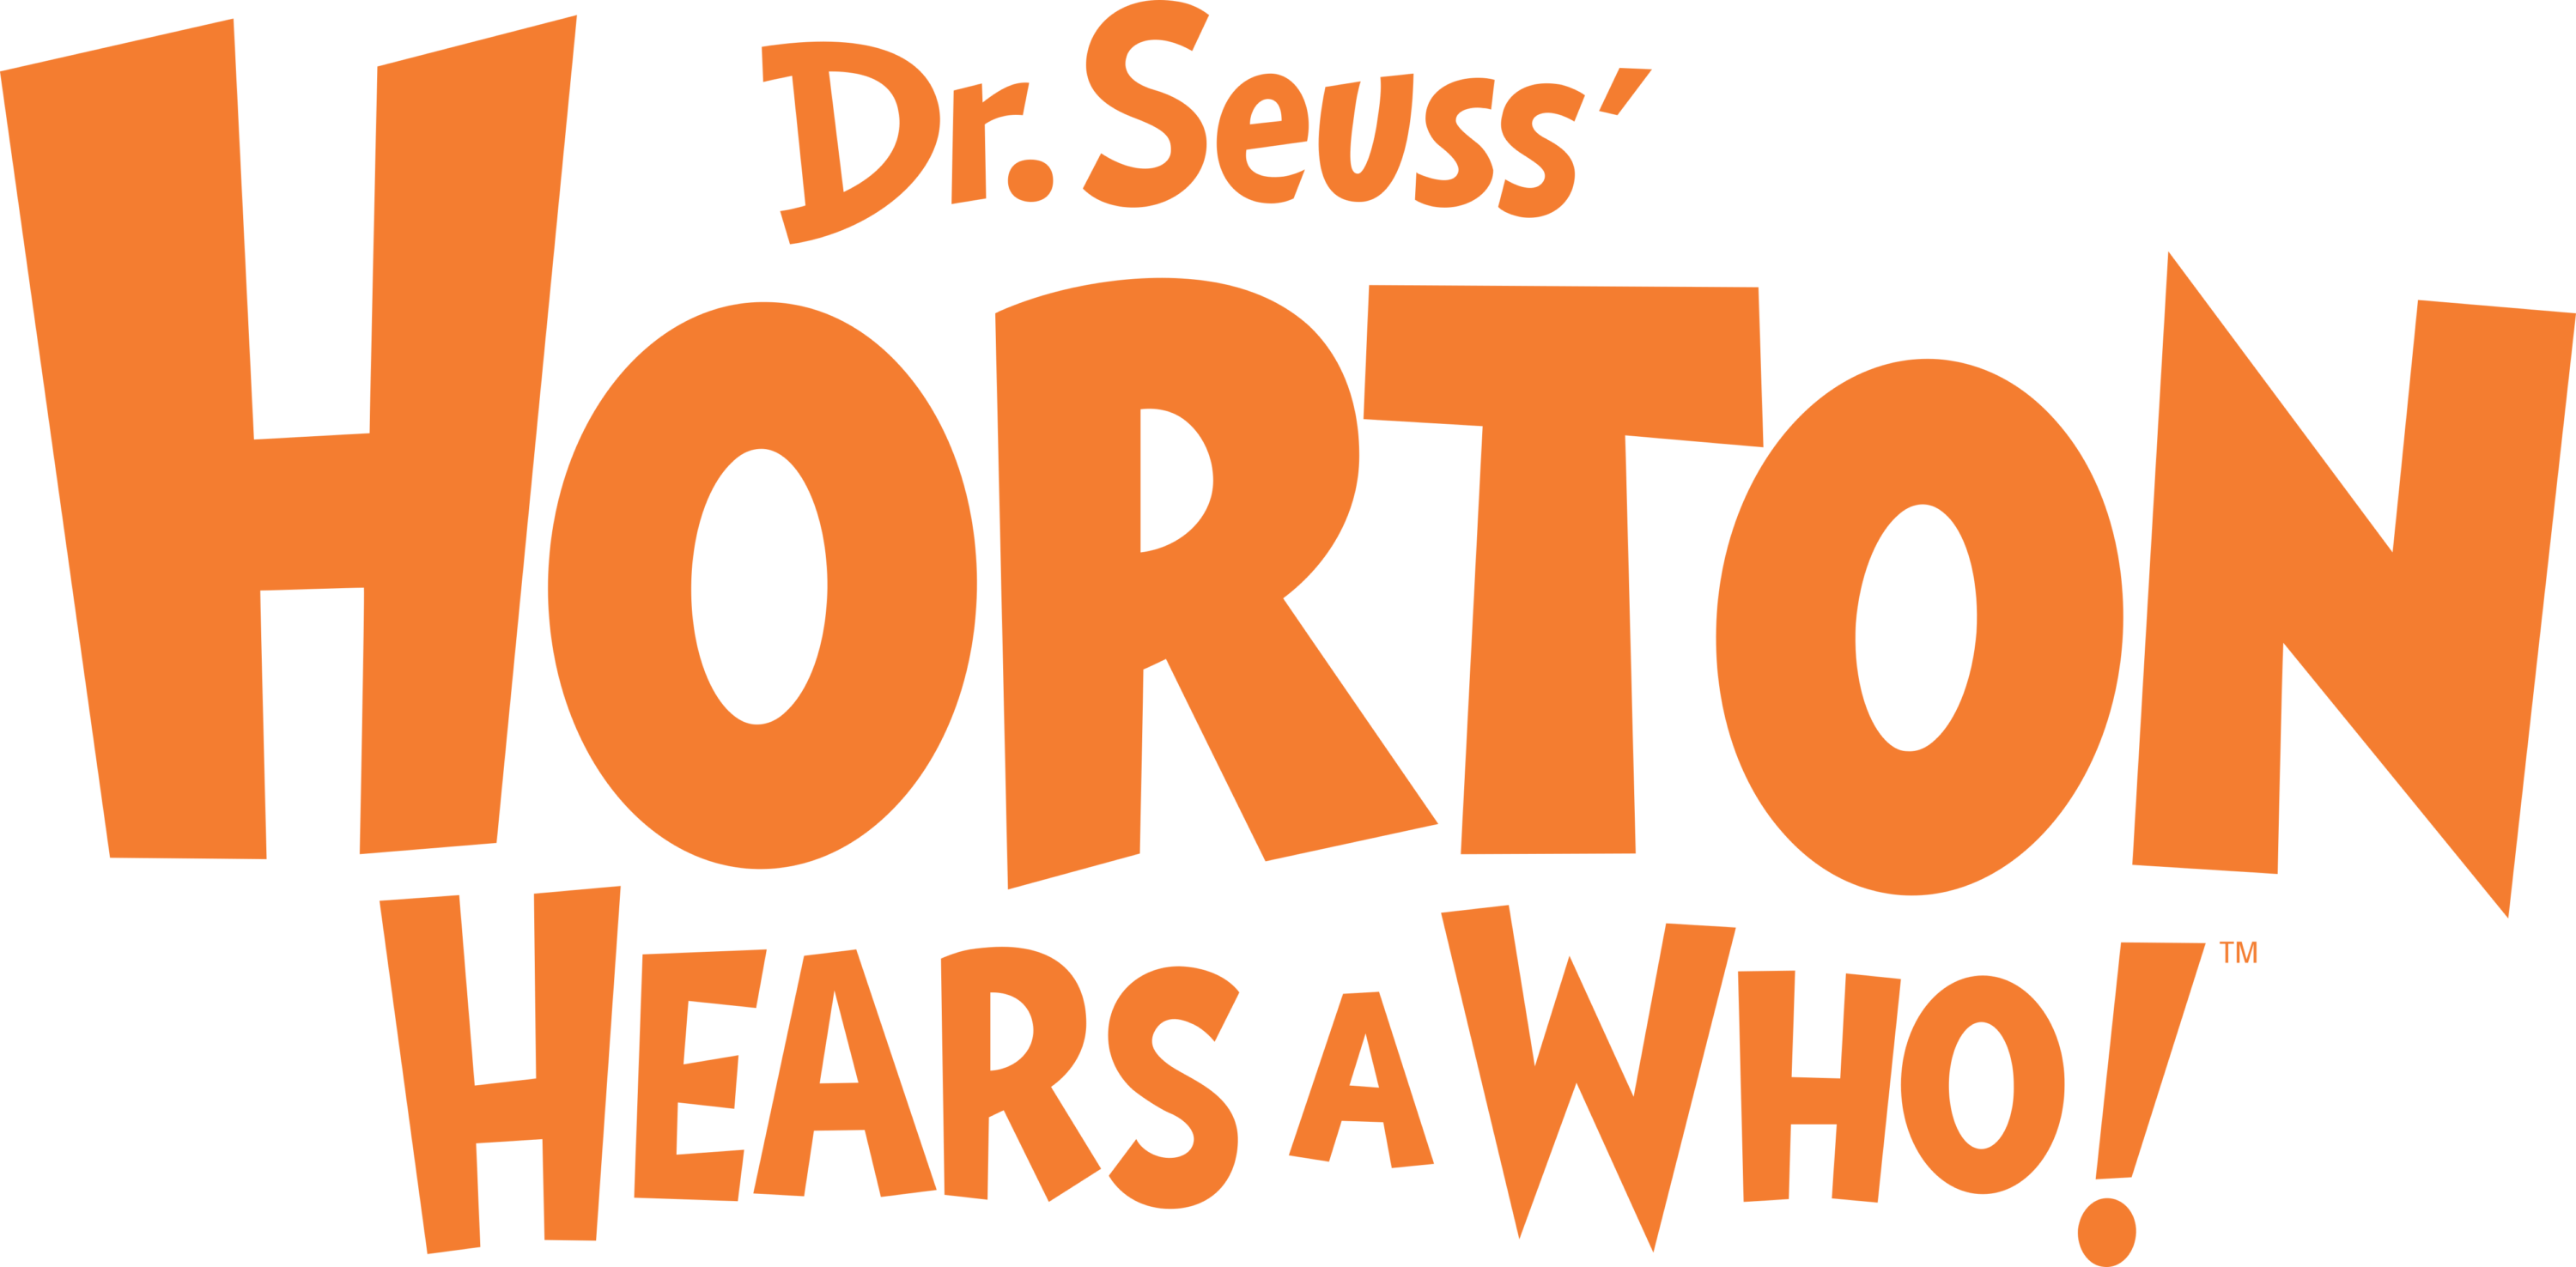 Horton Hears a Who Logo